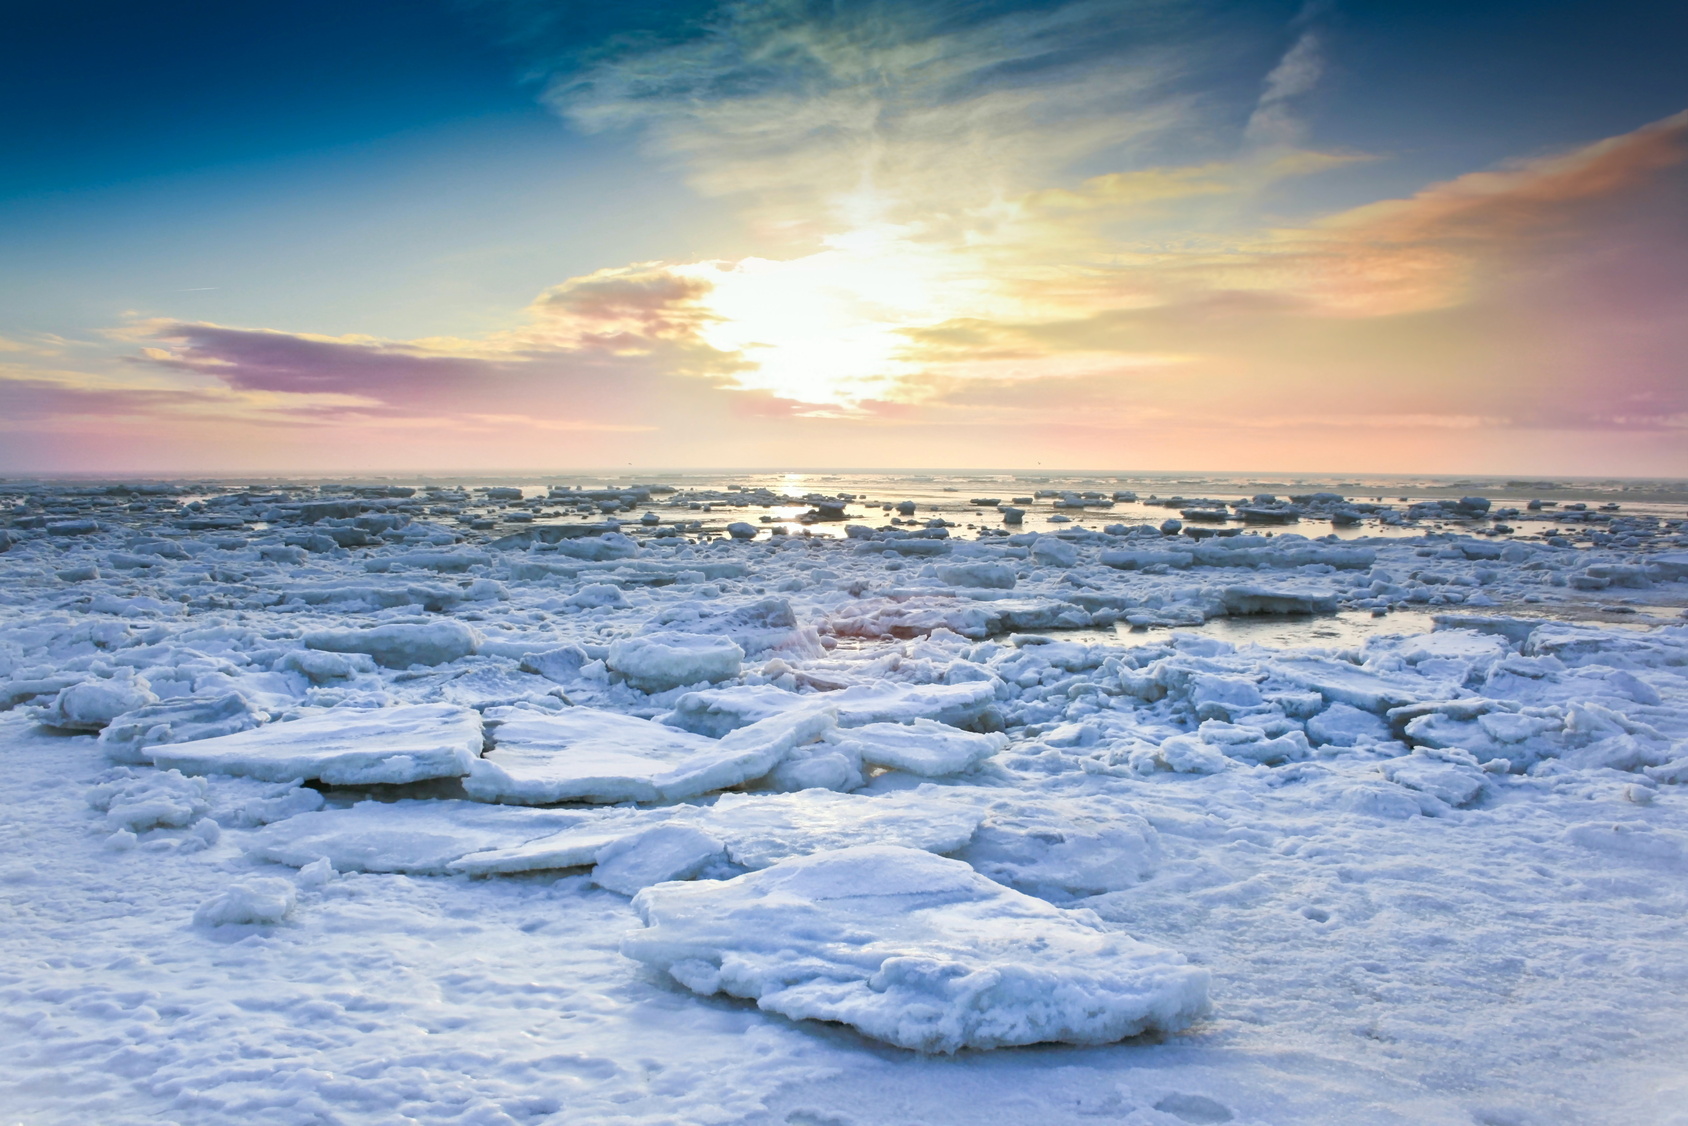 Eisschollen auf dem Meer, im Hintergrund färbt die tief stehende Sonne die Wolken am Horizont rosa